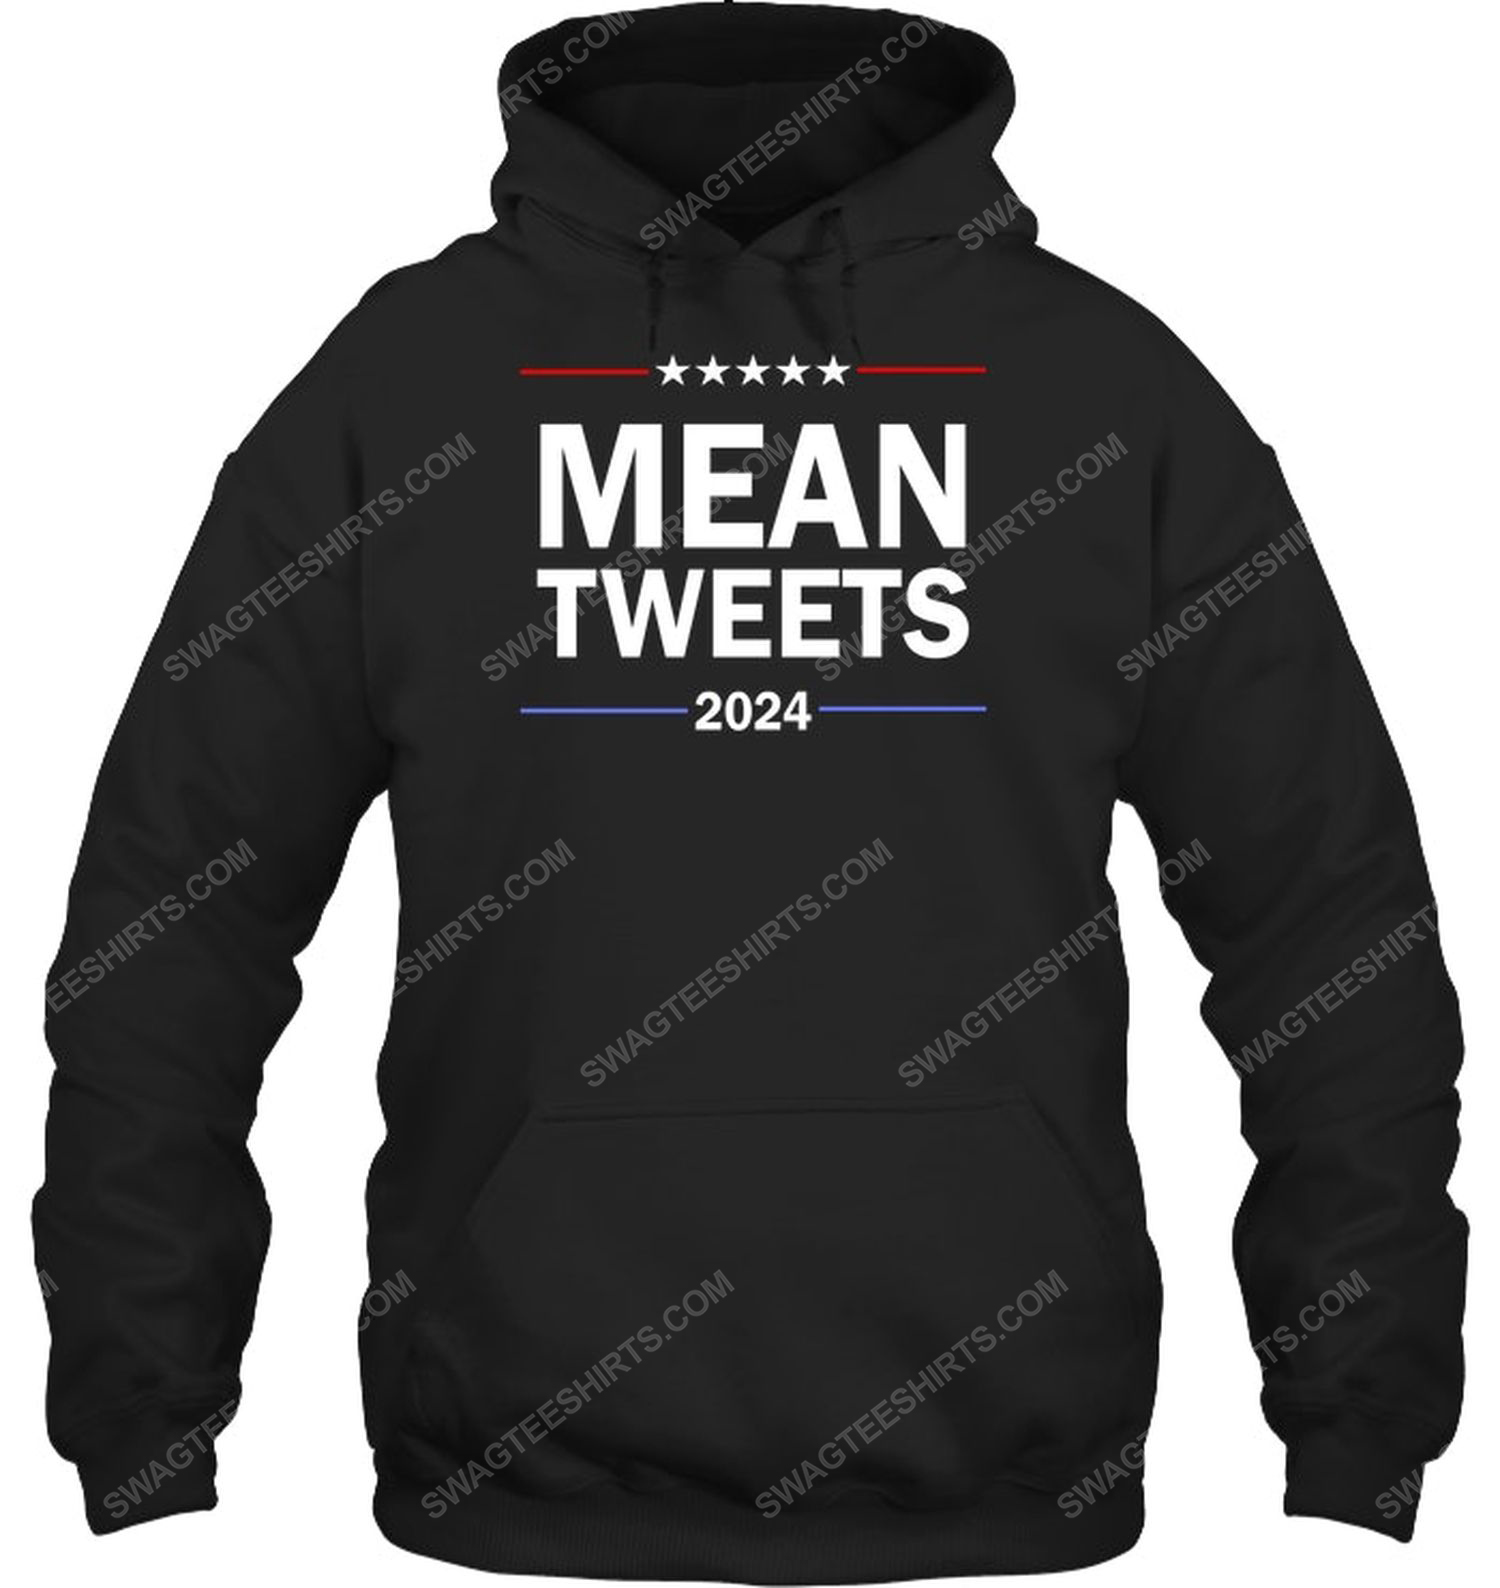 Mean tweets 2024 american flag political hoodie